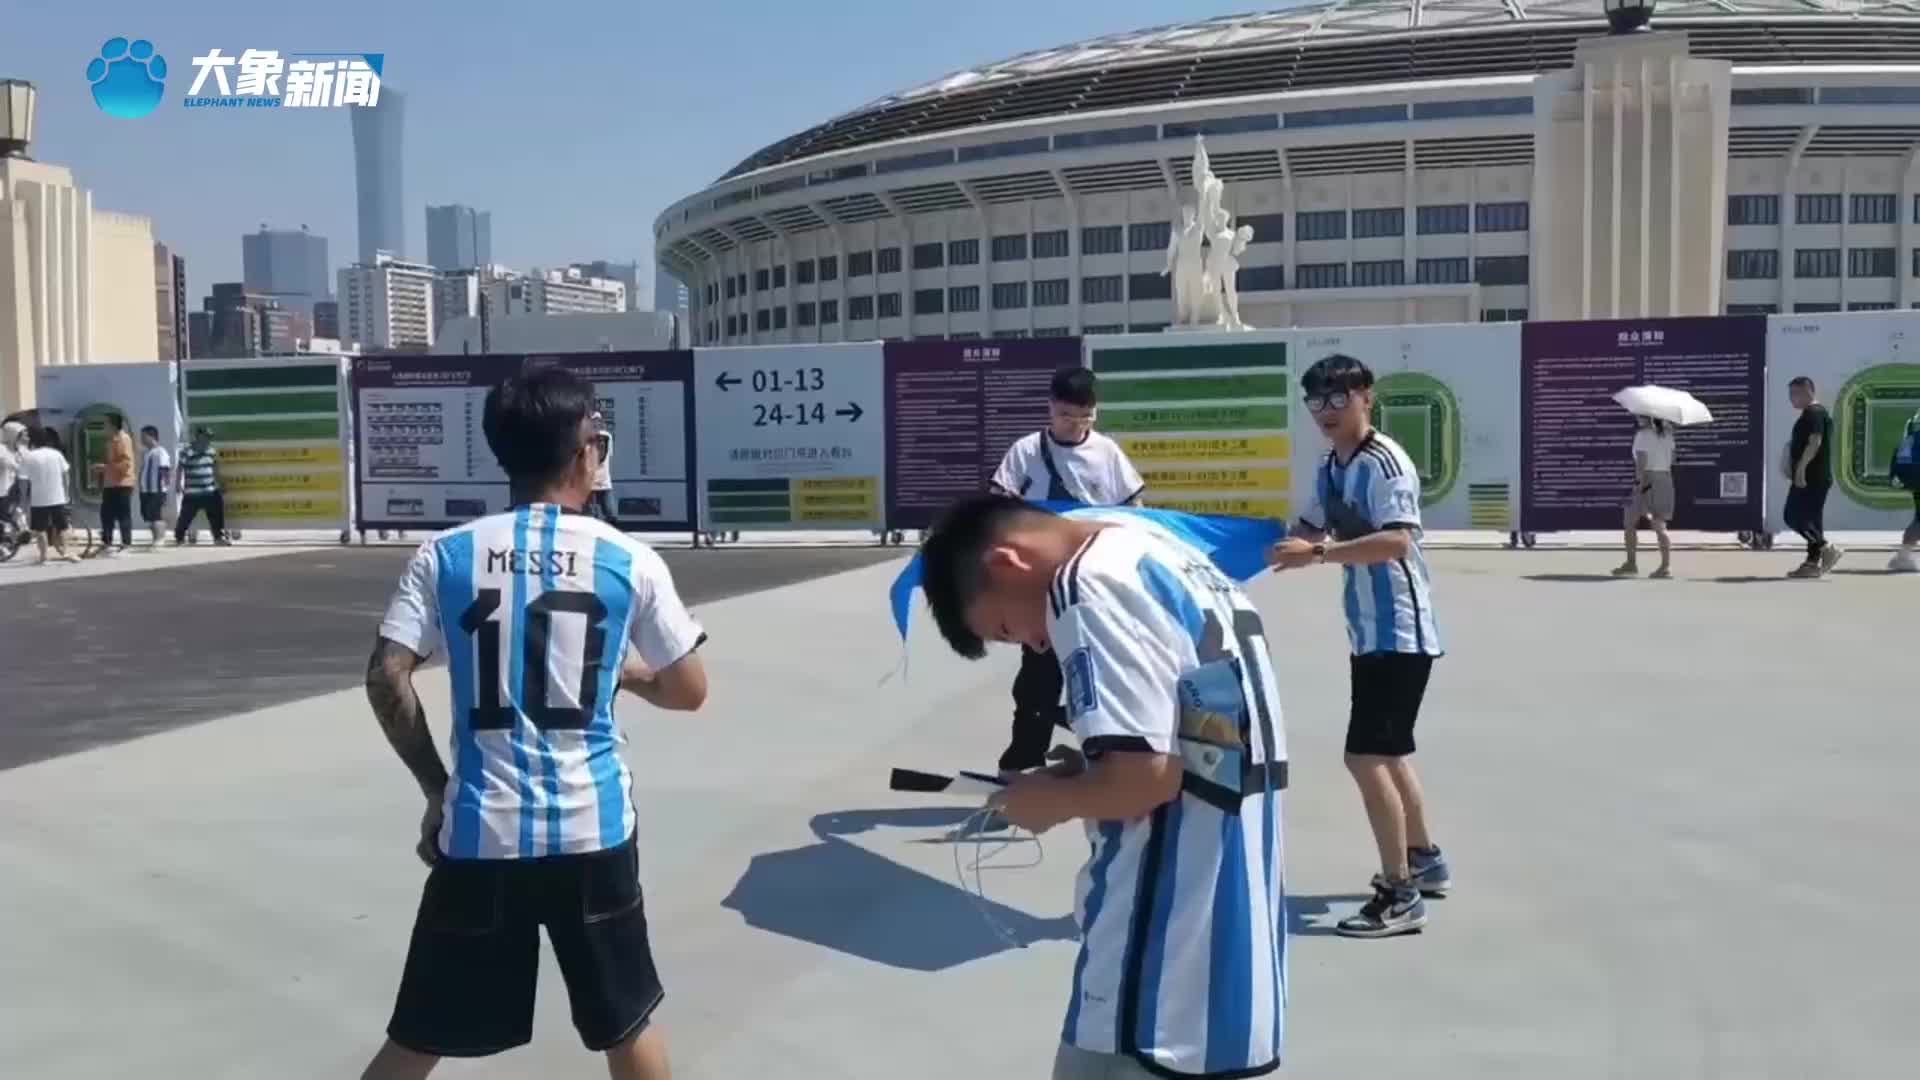 拄着拐杖、拿着足球…梅西球迷提前6小时北京工体外等待进场